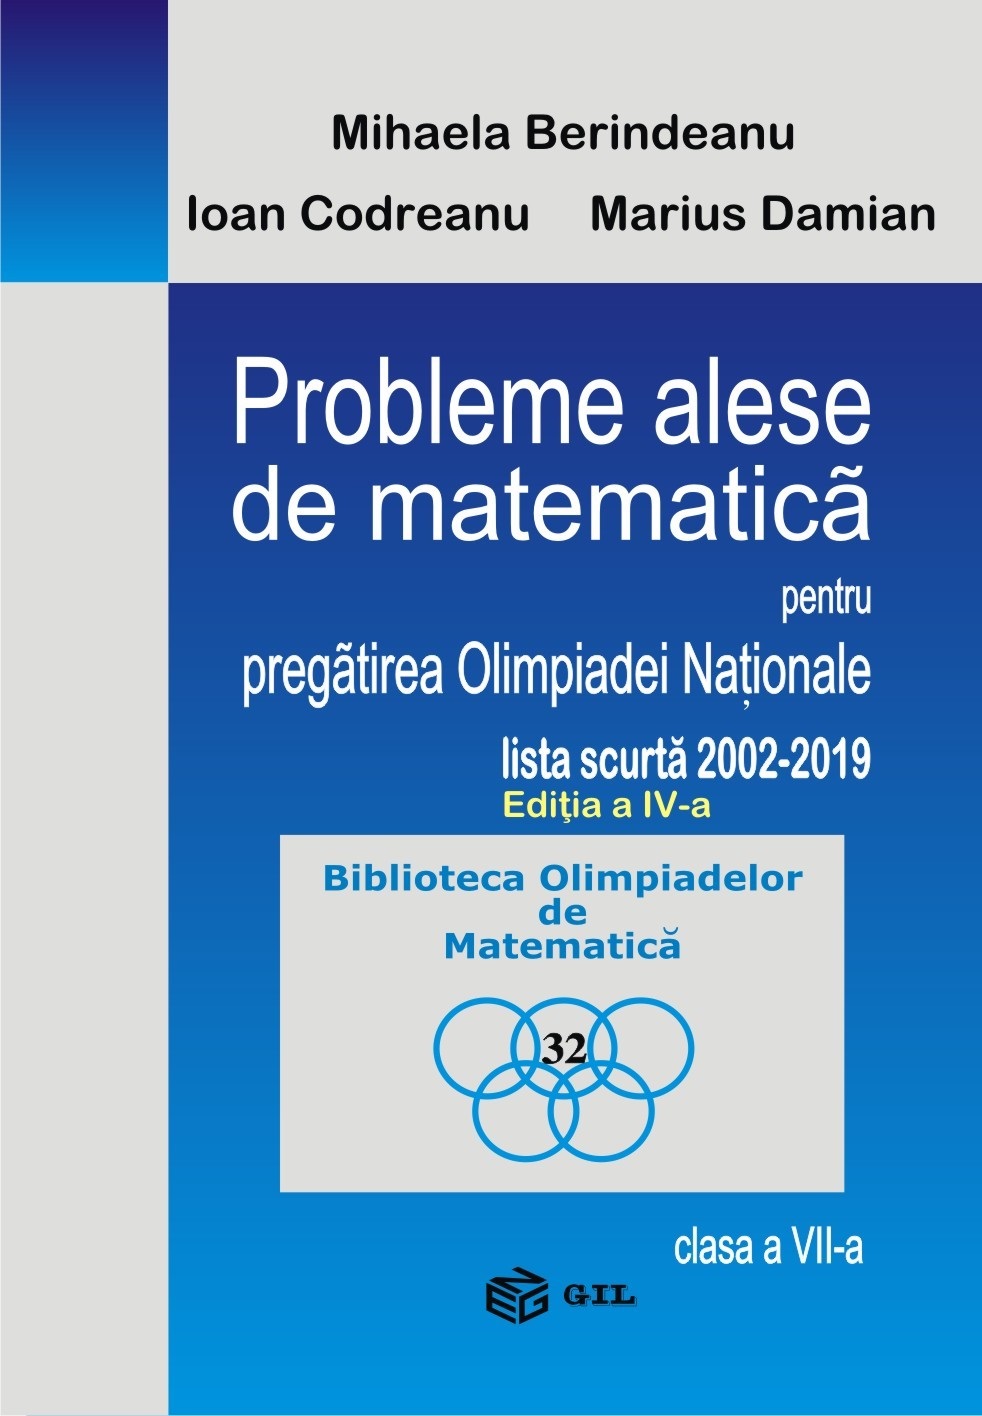 Probleme alese de matematica - Clasa 7 - Pentru pregatirea Olimpiadei Nationale - Mihaela Berindeanu